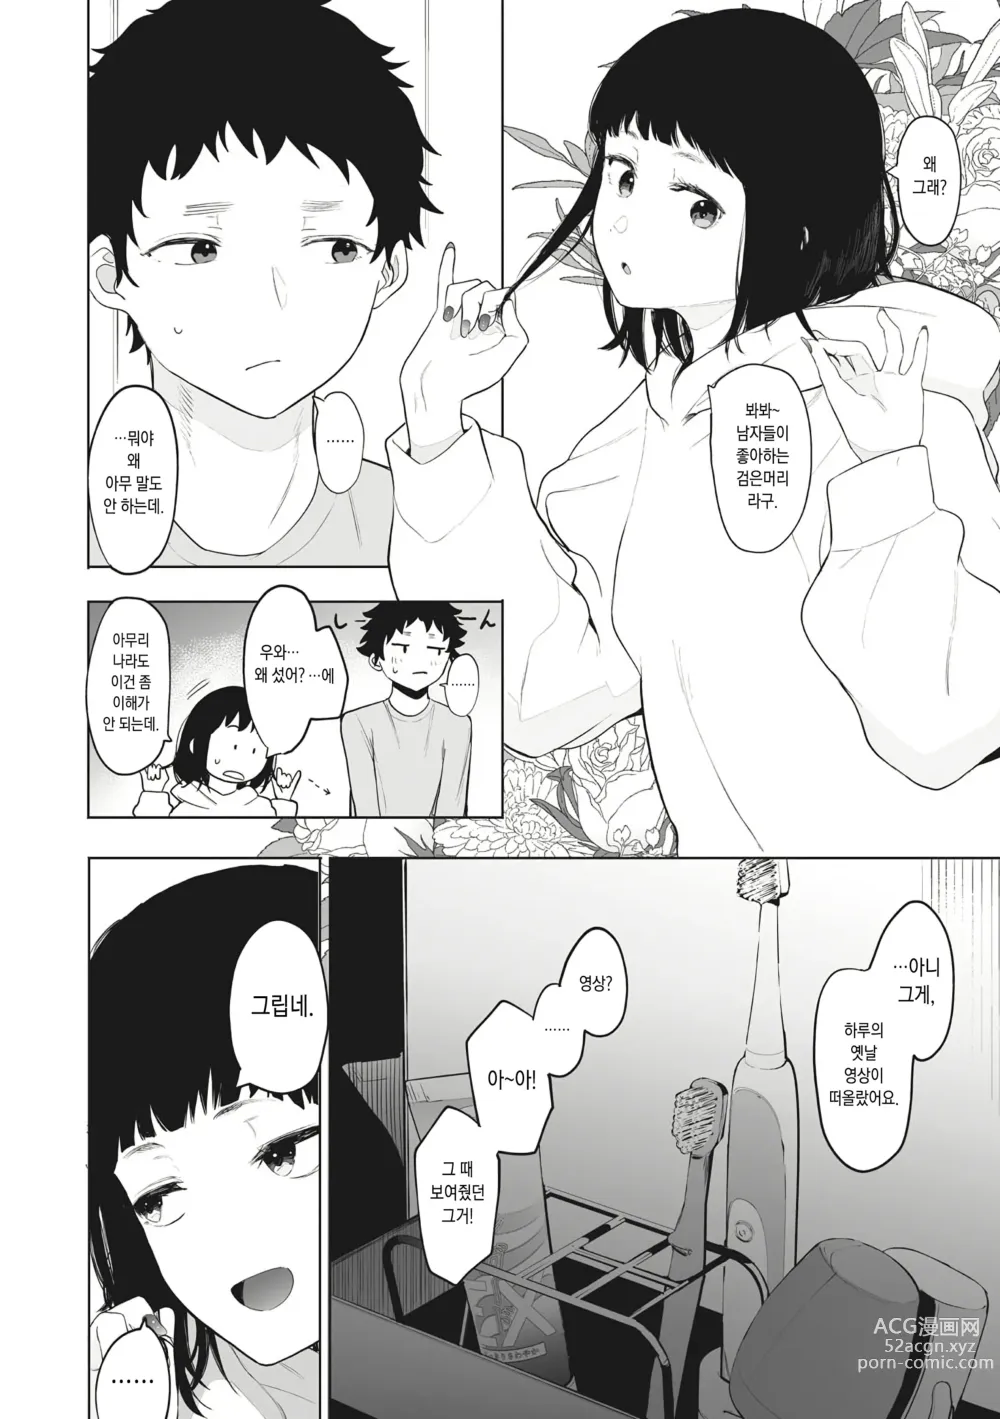 Page 35 of manga Eightman Sensei no Okage de Kanojo ga Dekimashita!